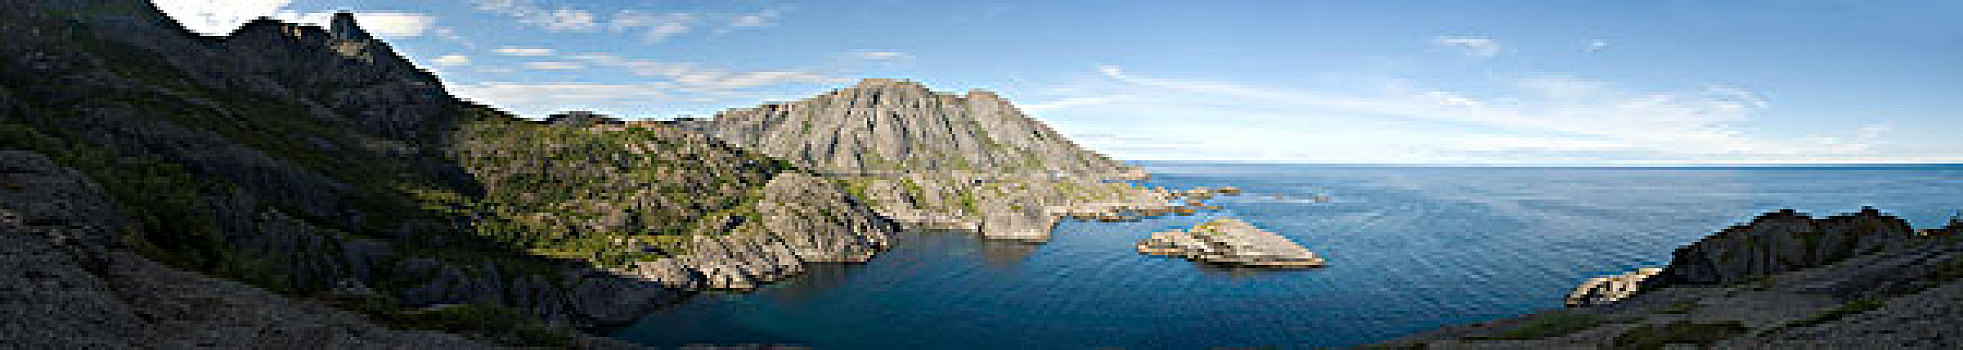 岩石,海岸线,挪威